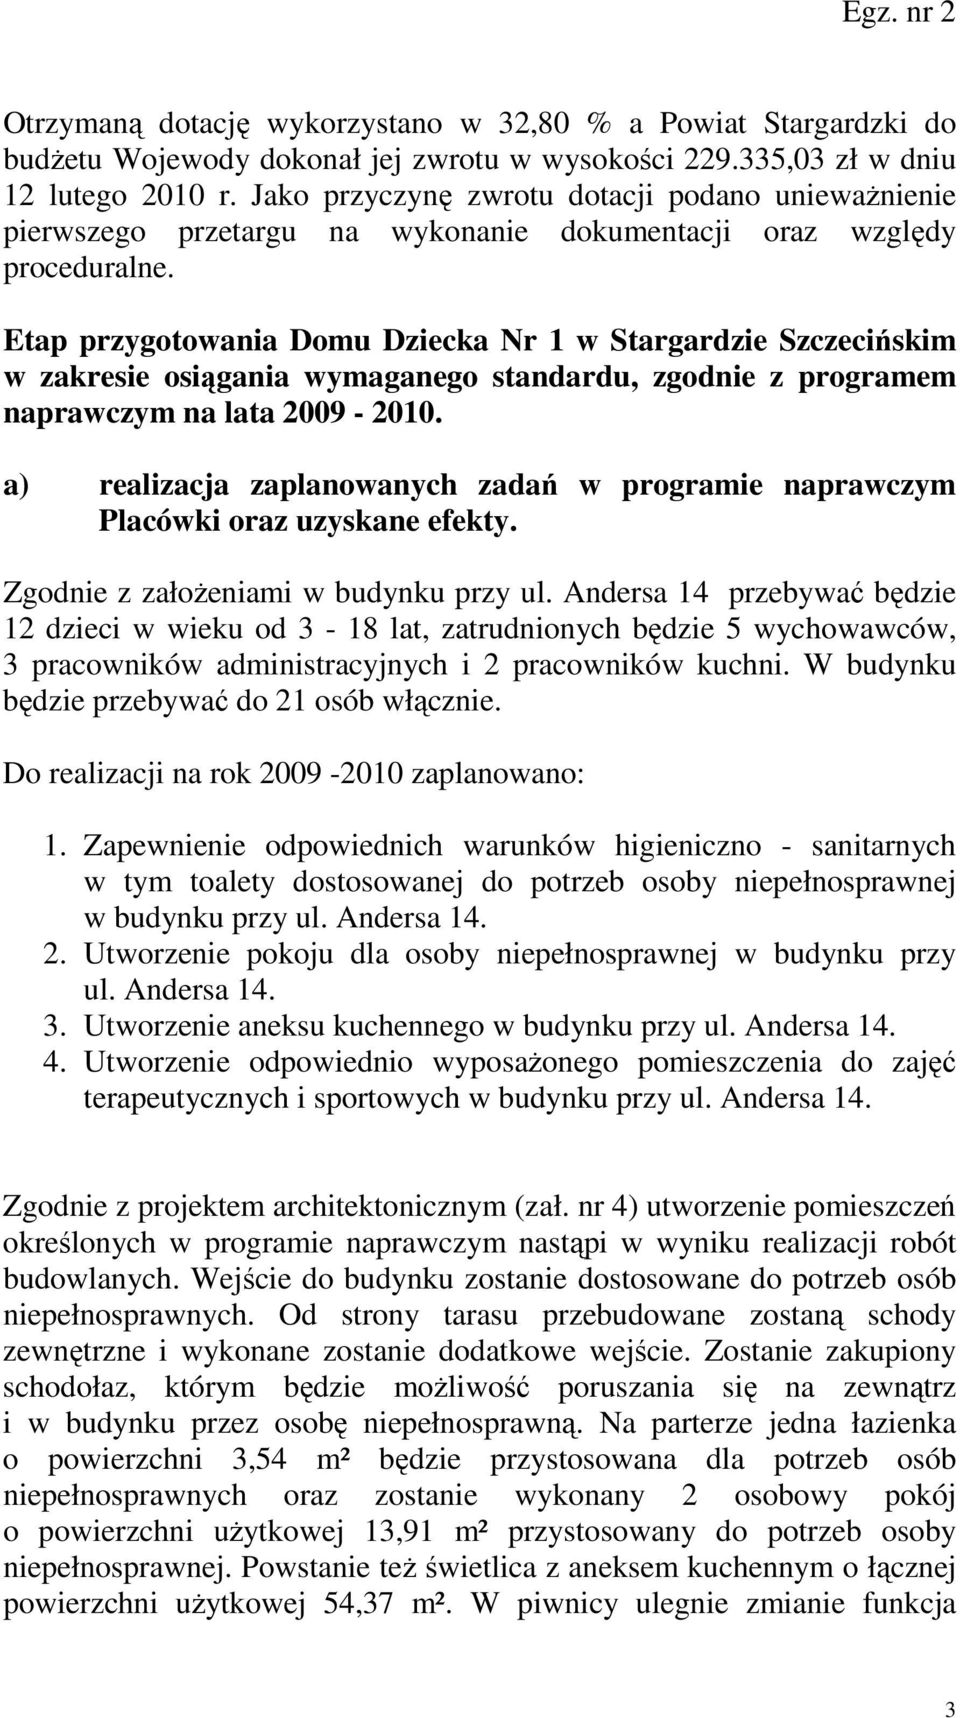 Etap przygotowania Domu Dziecka Nr 1 w Stargardzie Szczecińskim w zakresie osiągania wymaganego standardu, zgodnie z programem naprawczym na lata 2009-2010.